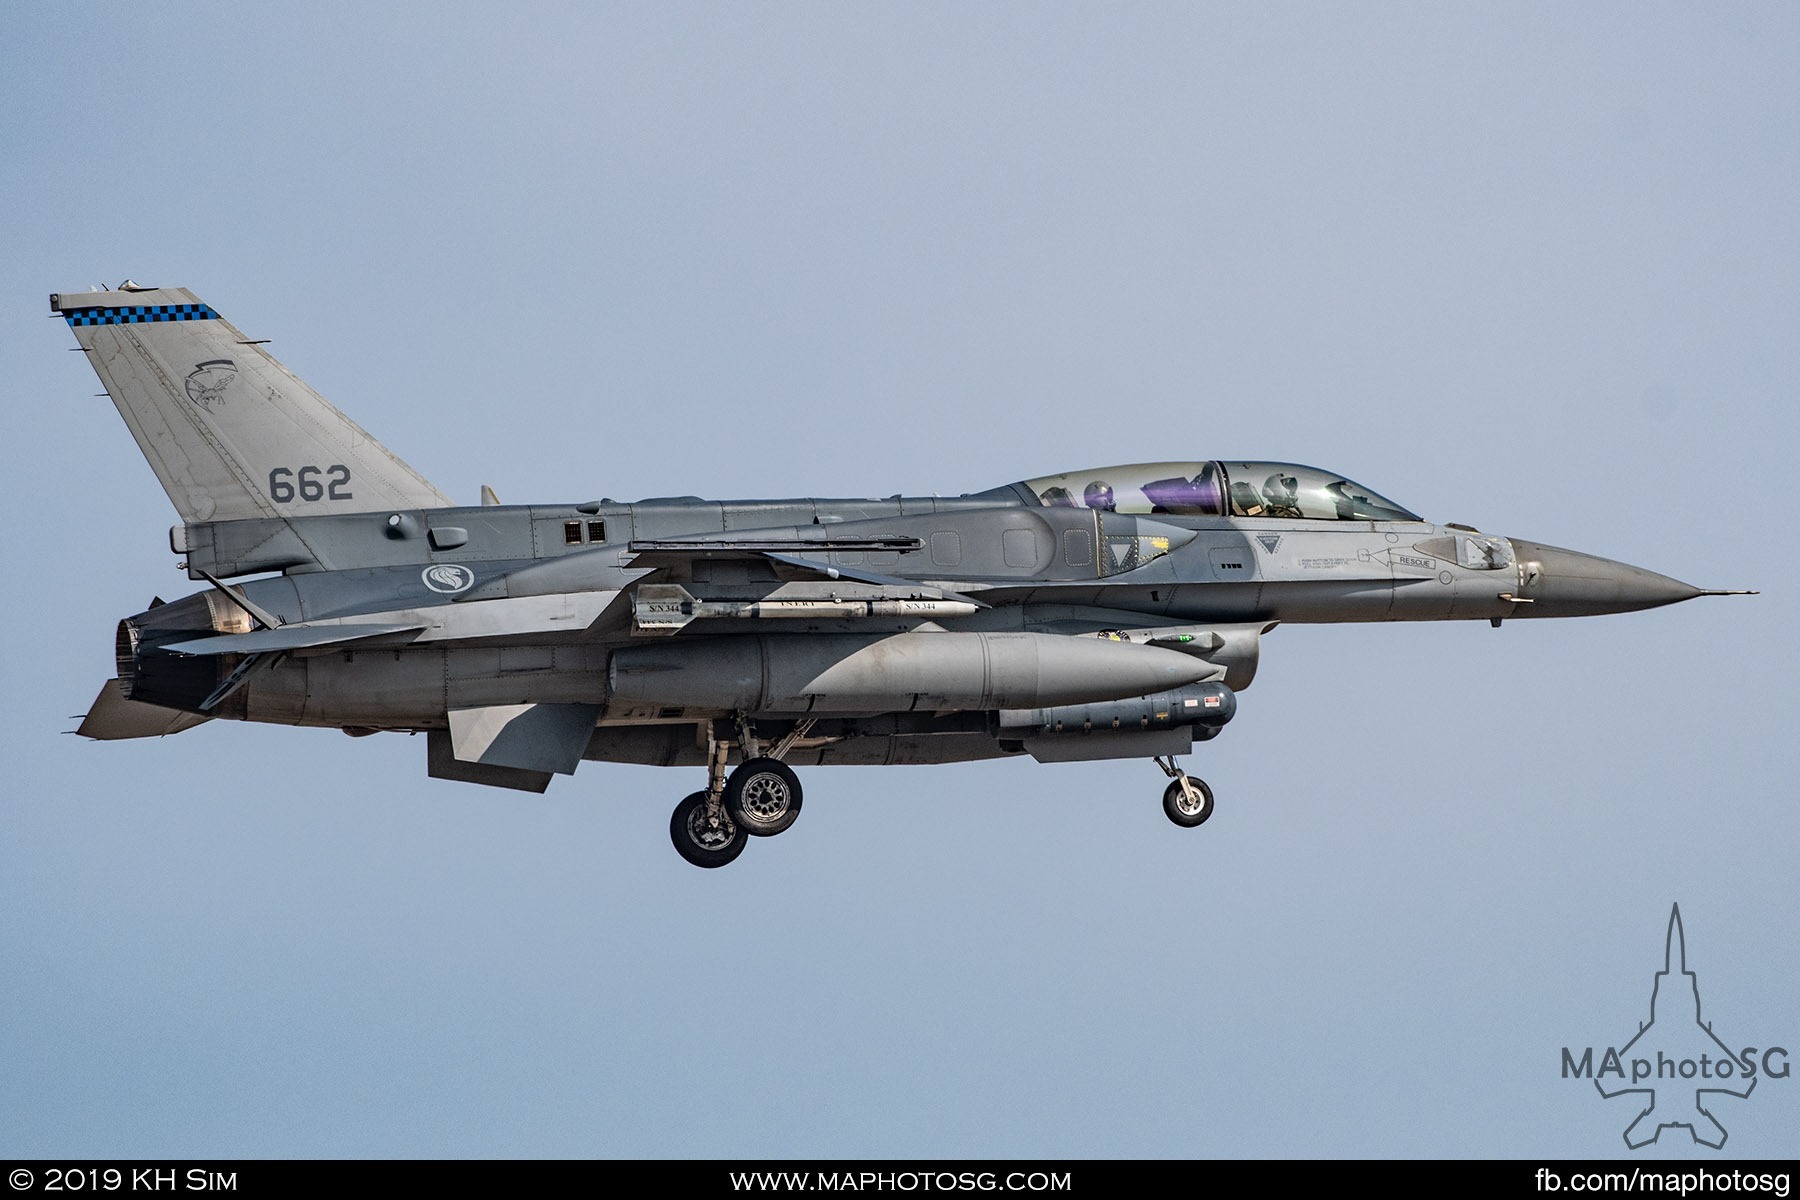 145 SQN F-16D+ (662)